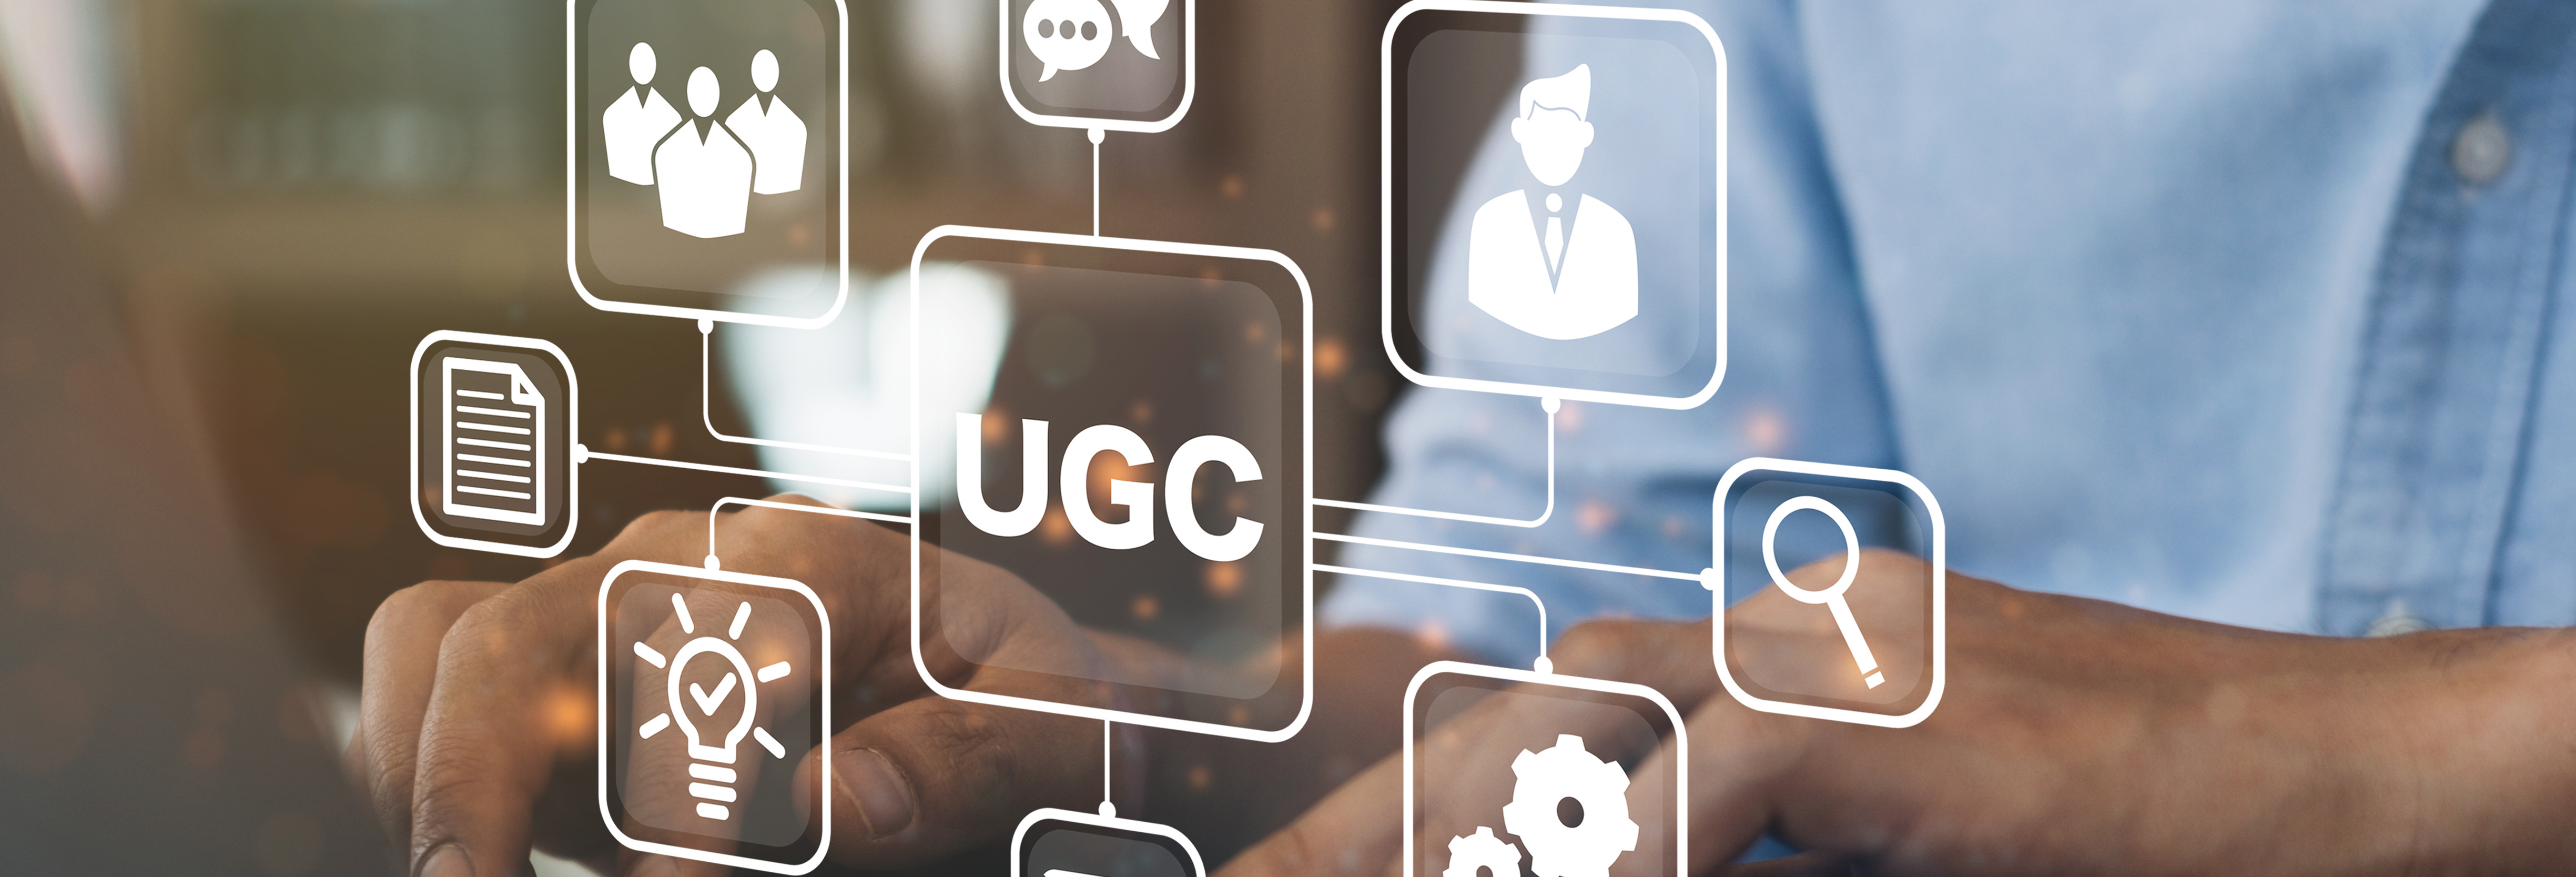 UGC Stock Image